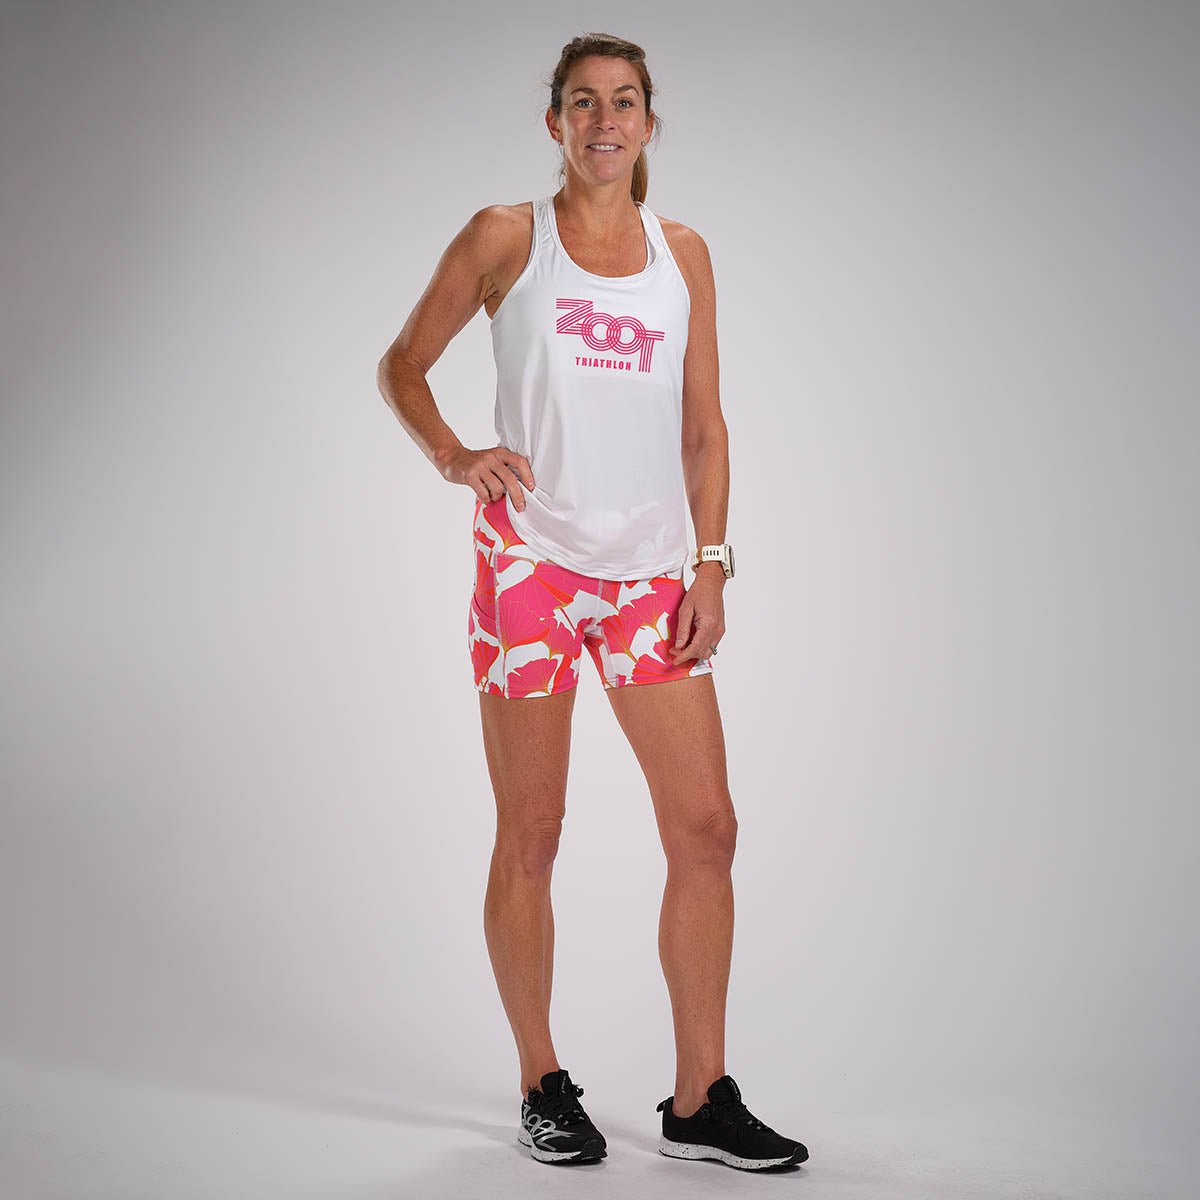 Zoot Sports Run Tops Womens LTD Run Singlet - Dream Big